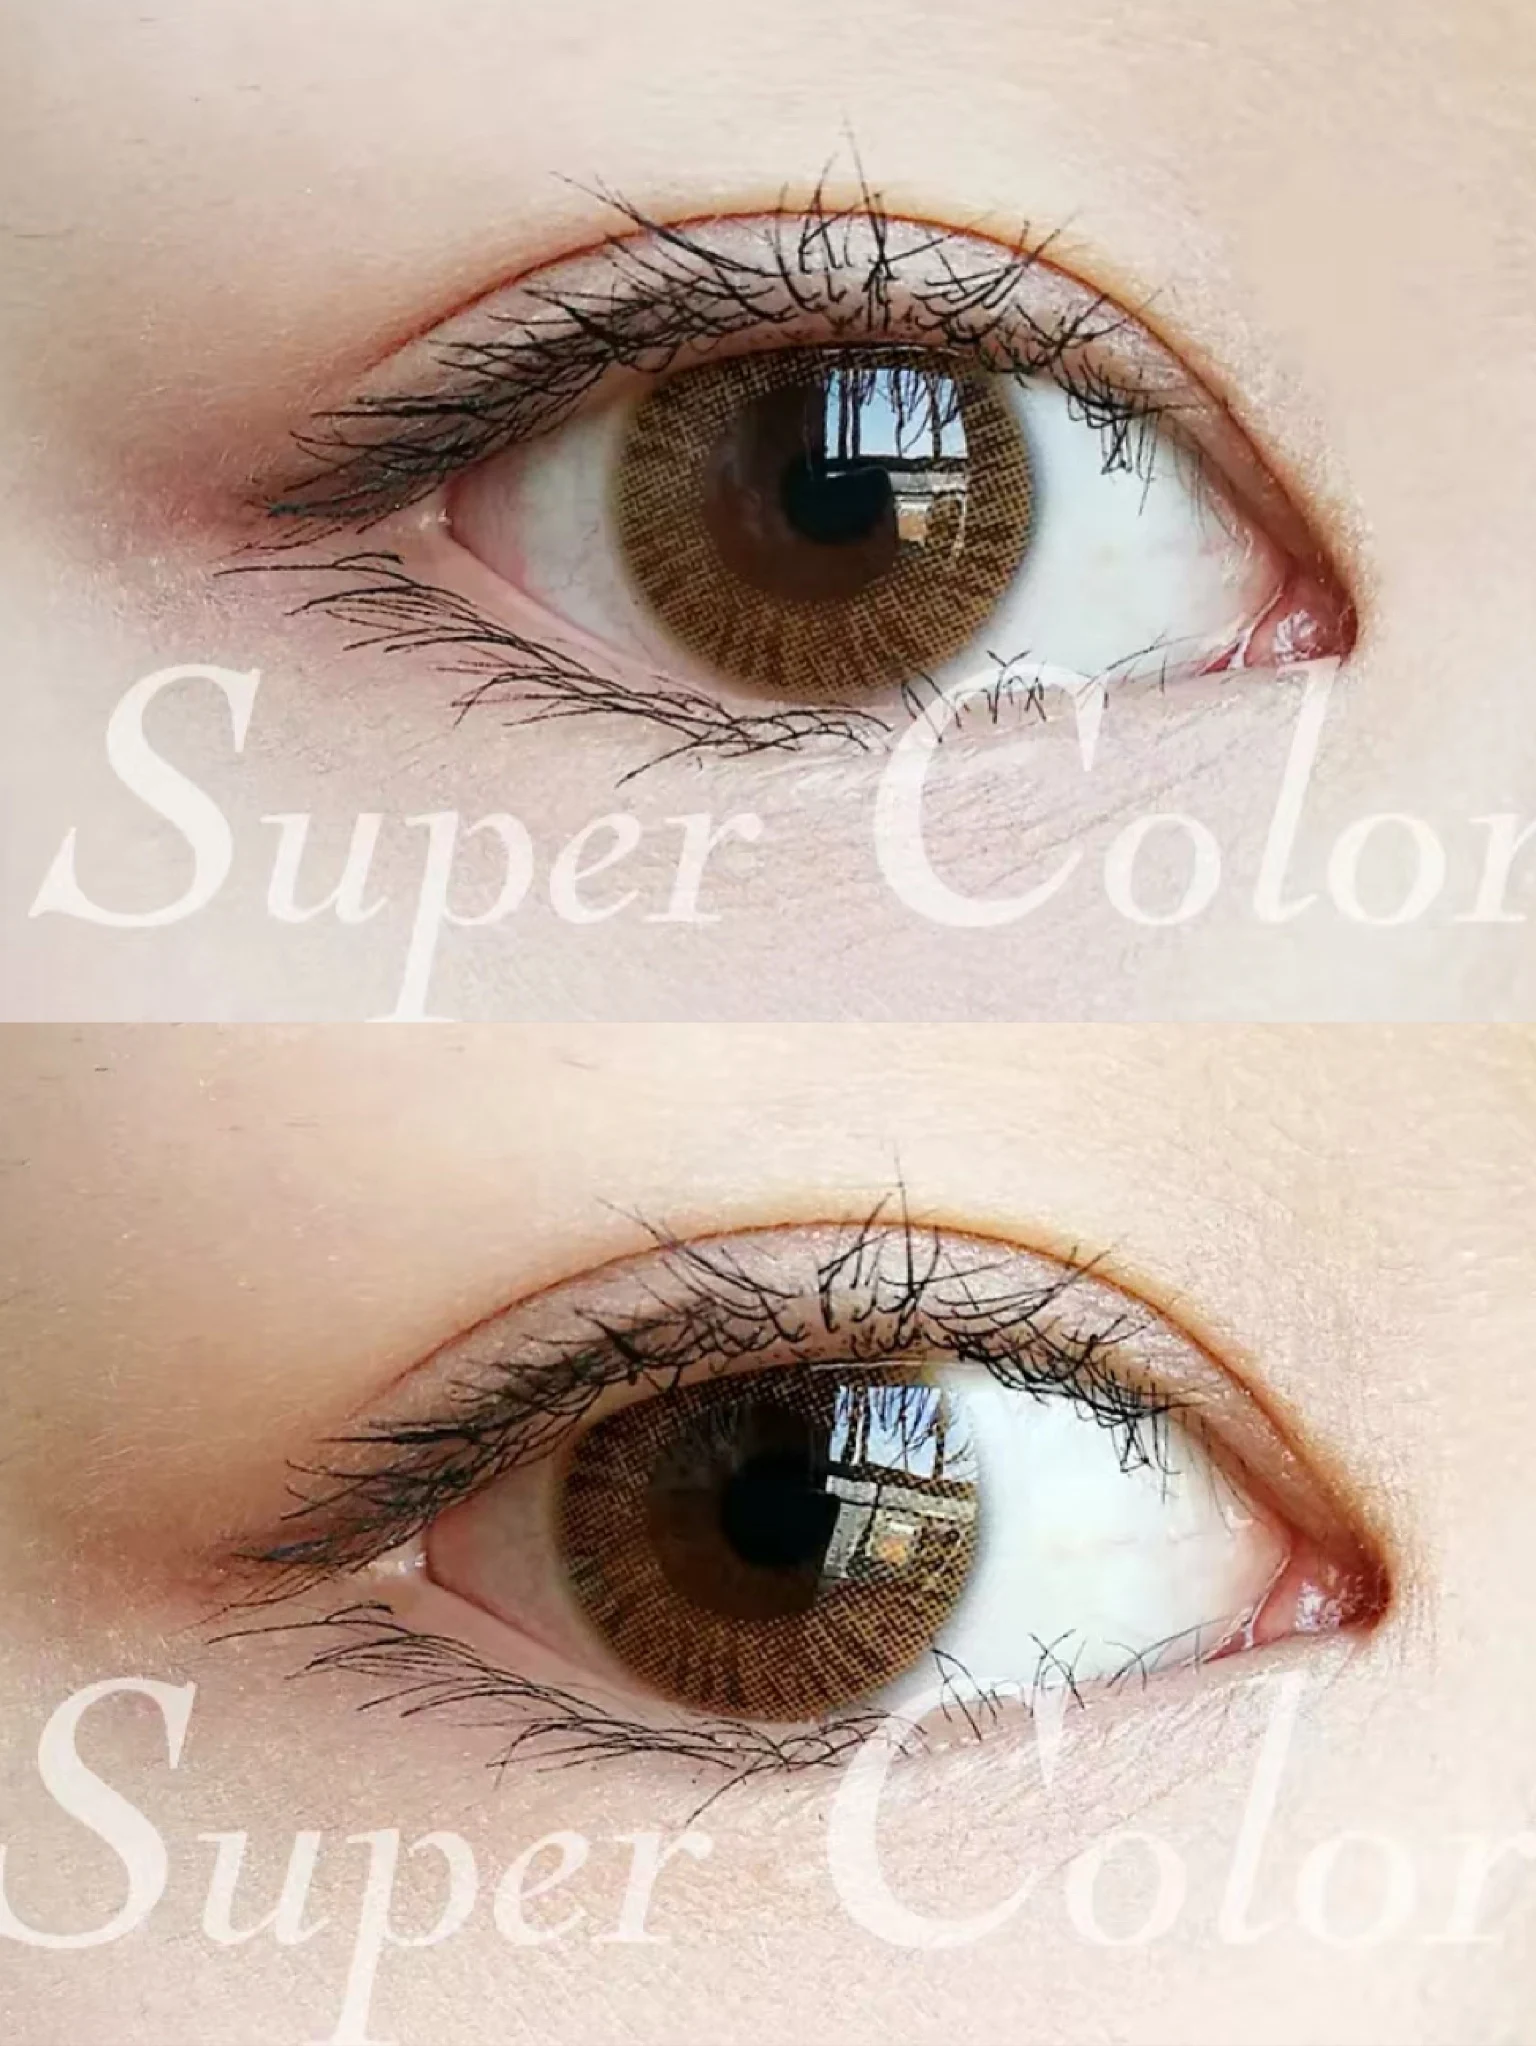 EASYCON Artric 76 de Color gris de Lentes de Contacto para los ojos Anual de Aspecto Natural pupila pequeña Maquillaje de Ojos grados Miopía receta 2